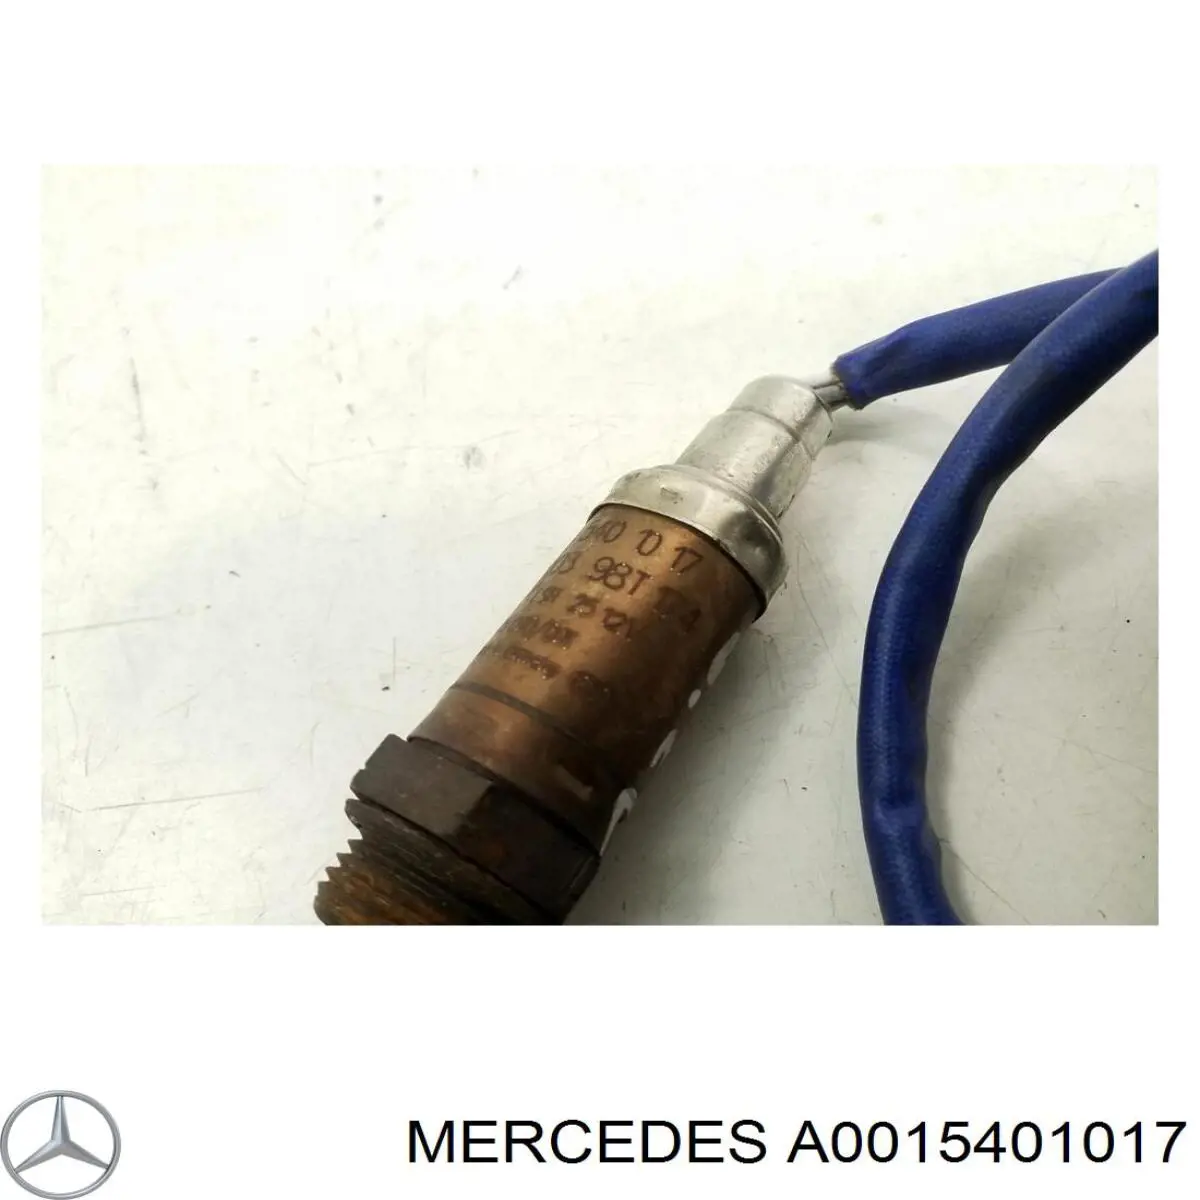 A0015401017 Mercedes sonda lambda, sensor de oxígeno antes del catalizador derecho